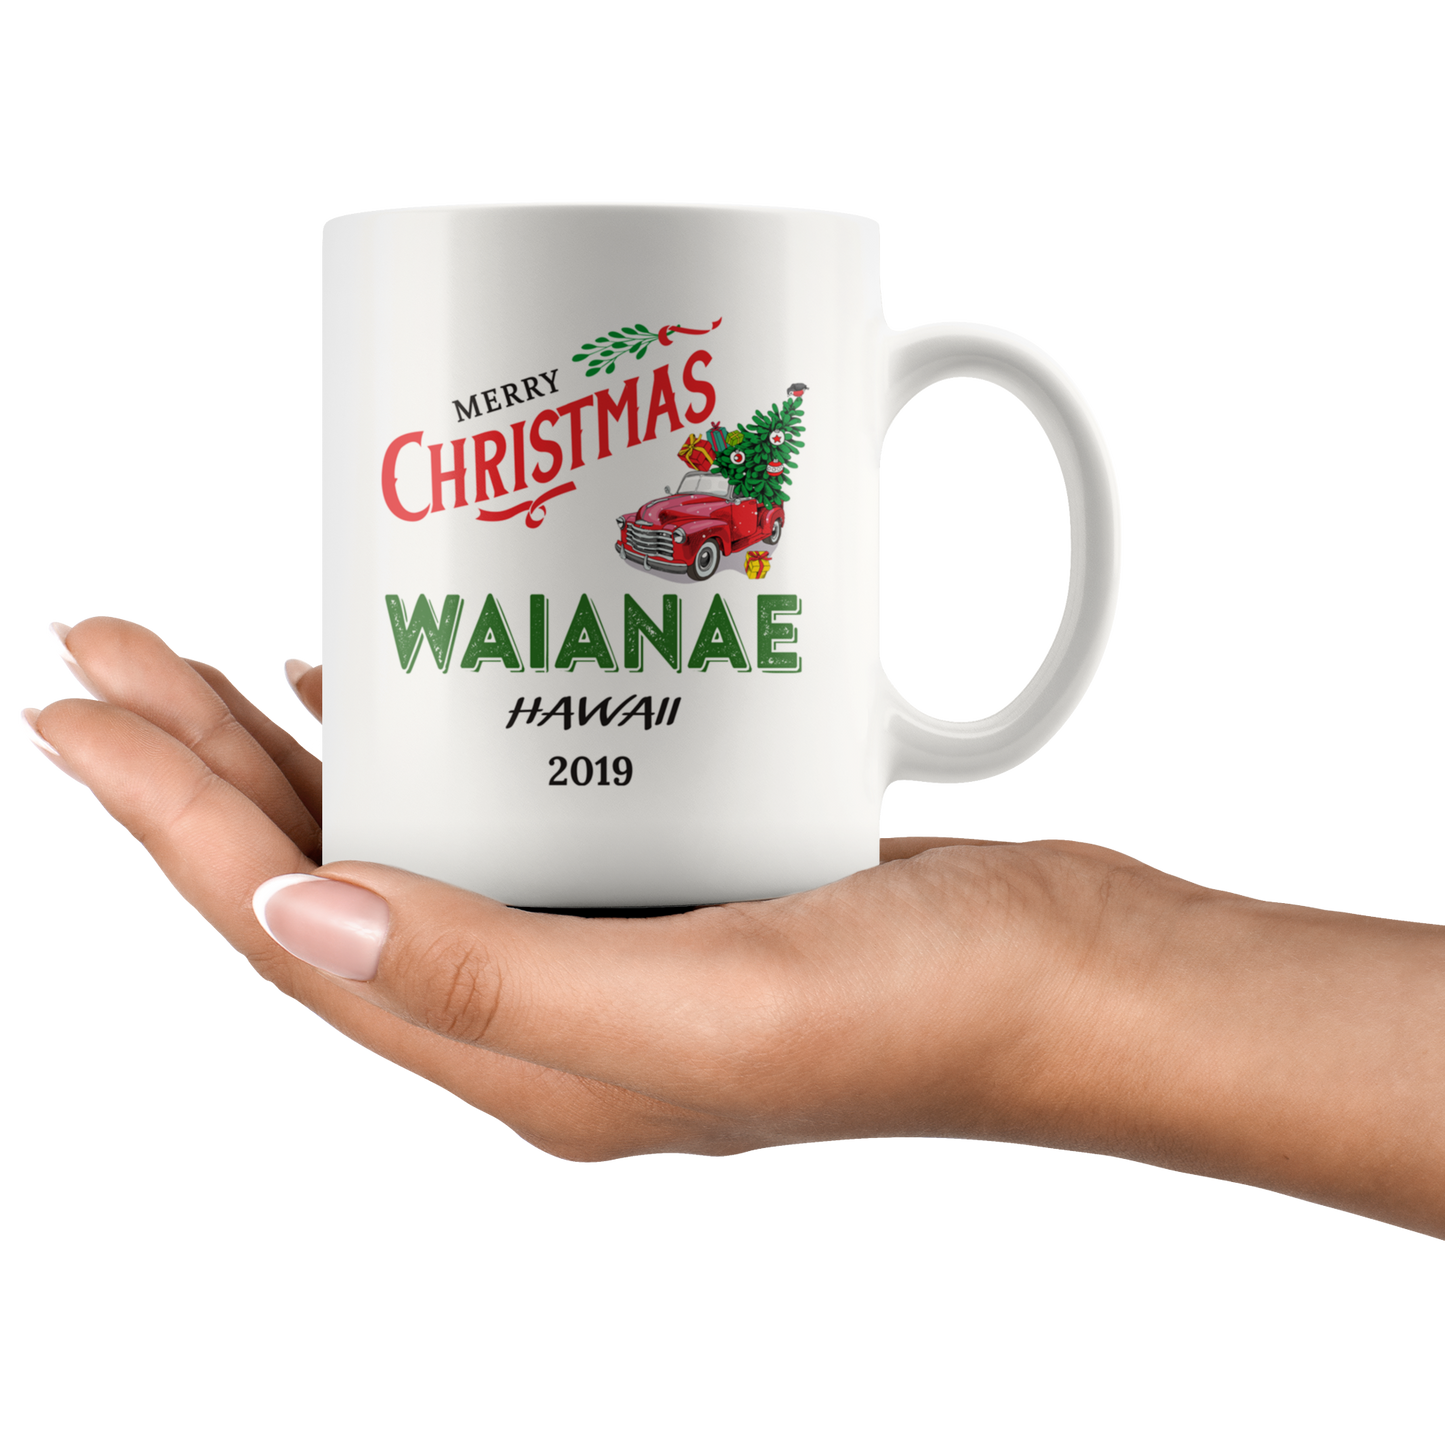 ND20747381-sp-19774 - Tis The Season Christmas Mug - Christmas Mug 2019 Waianae Ha